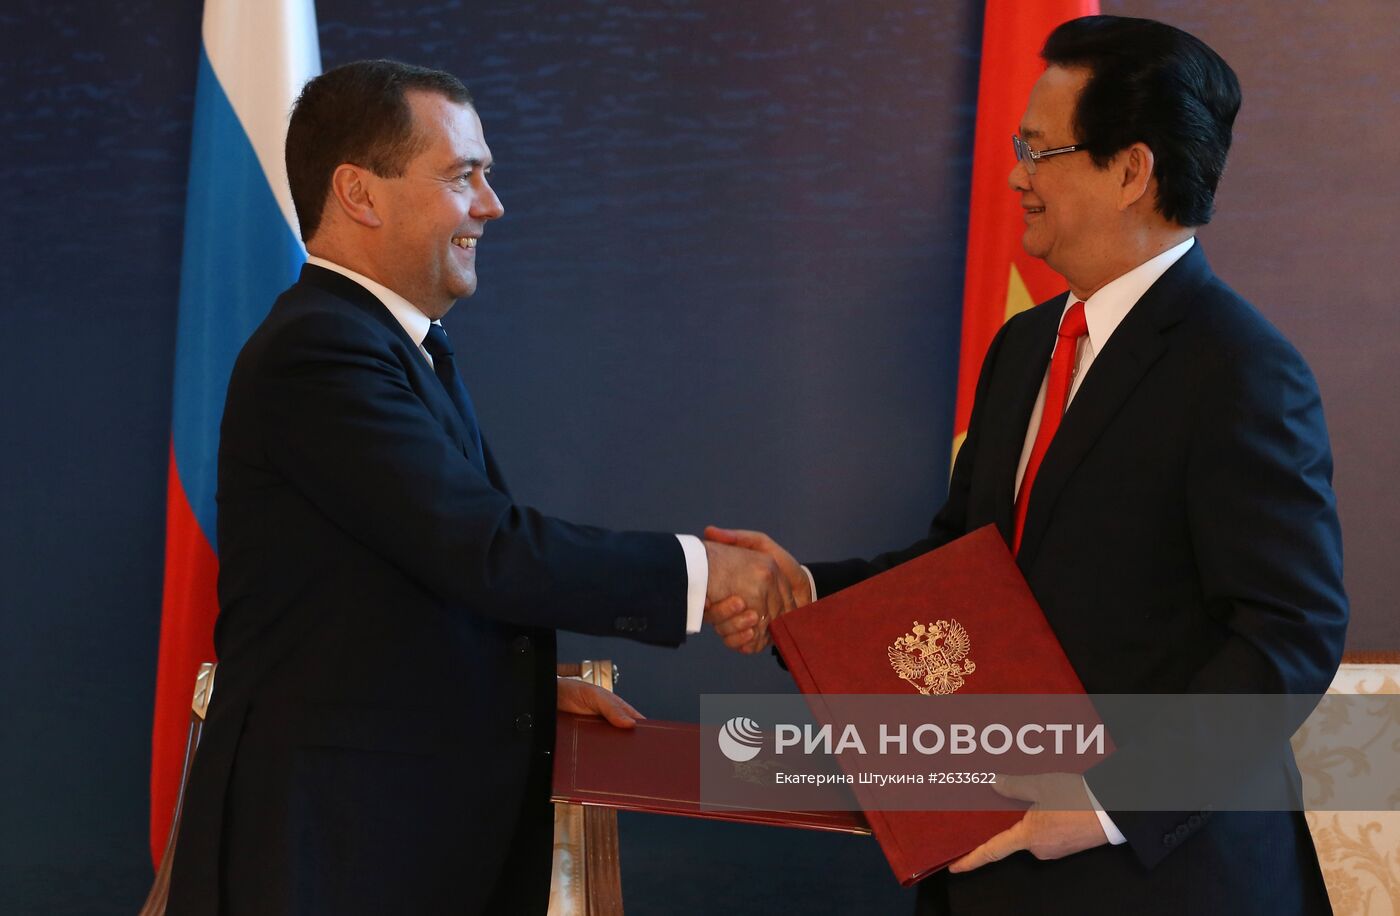 Премьер-министр РФ Д.Медведев принимает участие в заседаниях Совета глав правительств СНГ и ЕАЭС в Казахстане